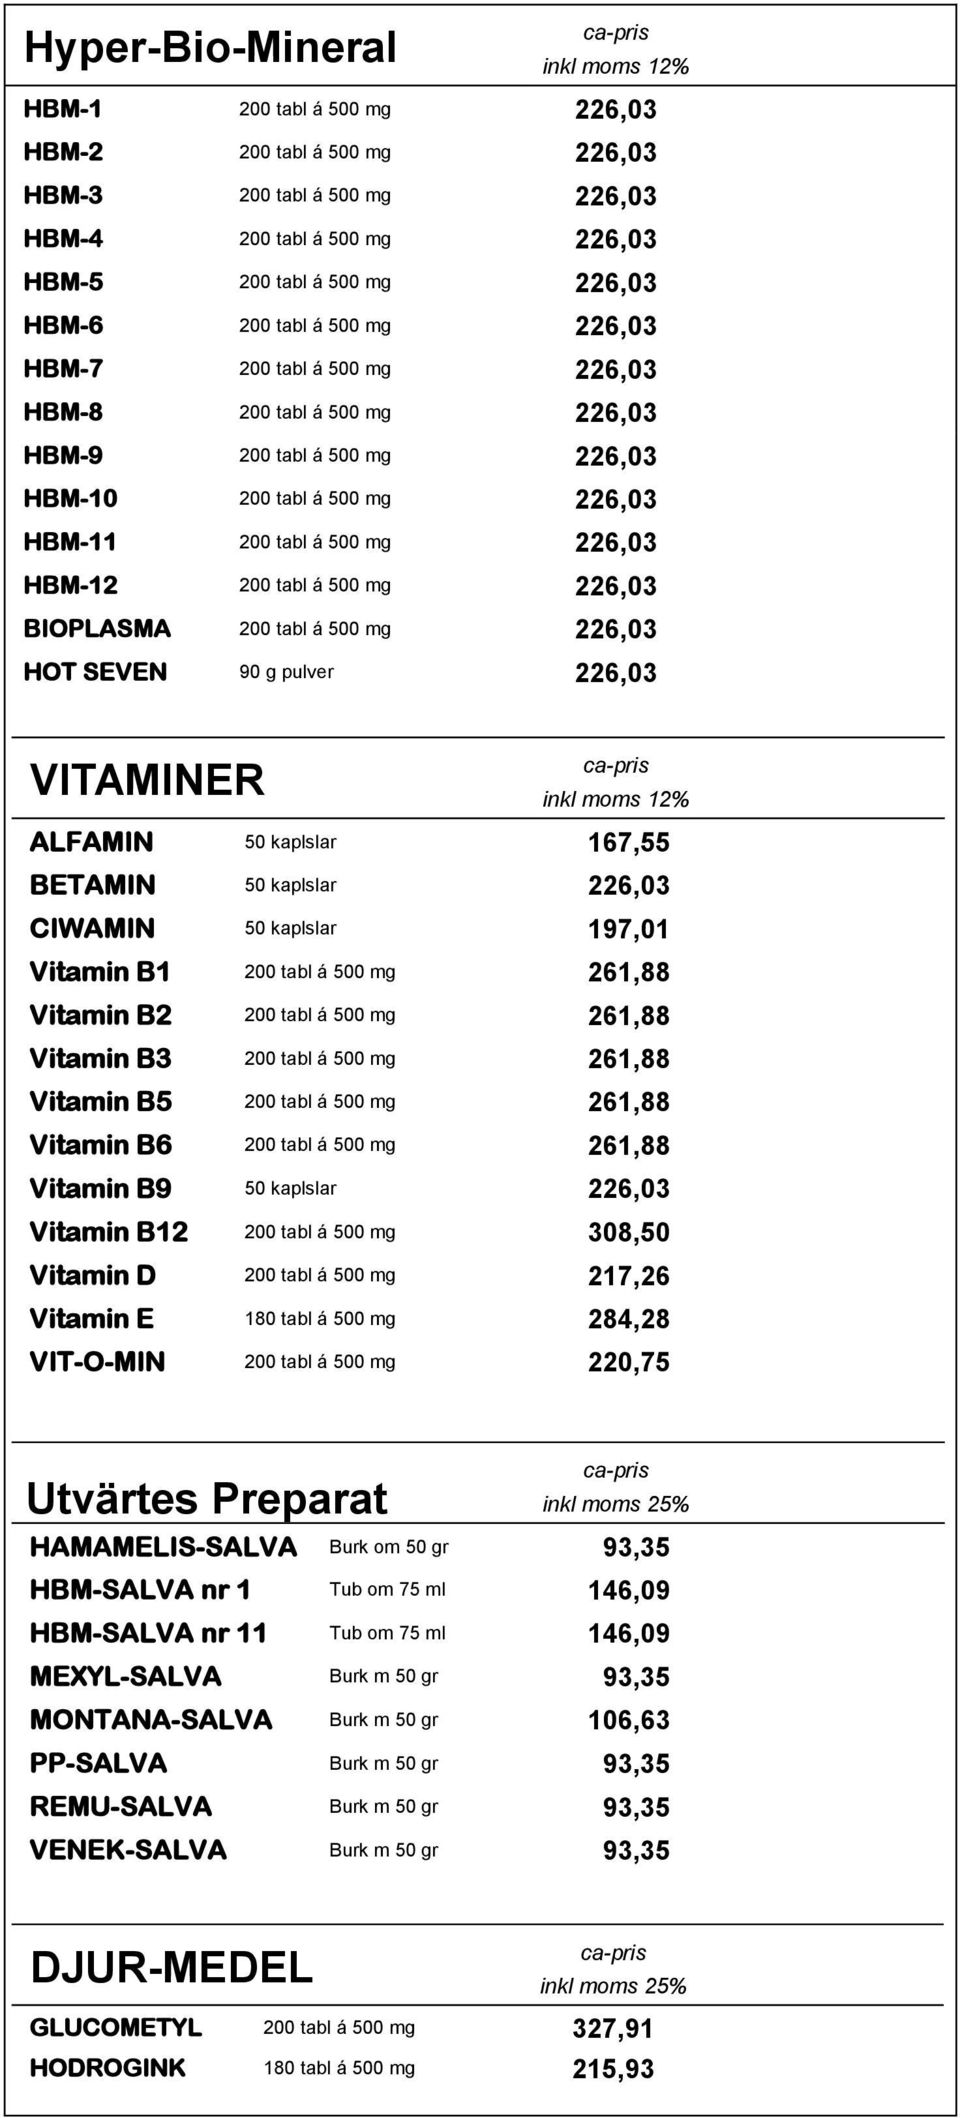 BIOPLASMA 200 tabl á 500 mg 226,03 HOT SEVEN 90 g pulver 226,03 VITAMINER ALFAMIN 50 kaplslar 167,55 BETAMIN 50 kaplslar 226,03 CIWAMIN 50 kaplslar 197,01 Vitamin B1 200 tabl á 500 mg 261,88 Vitamin